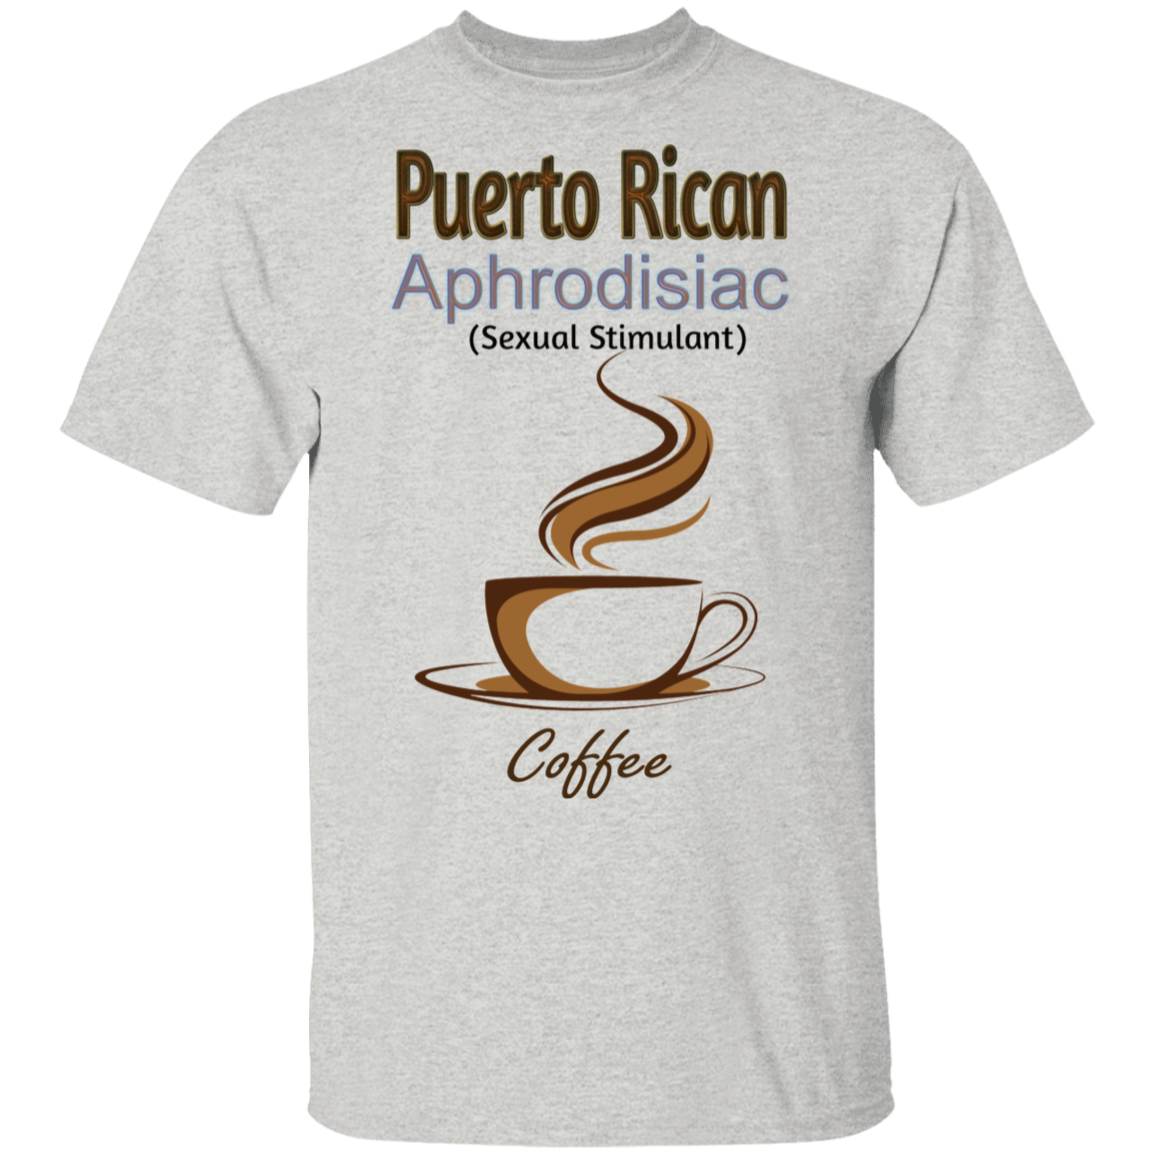 AR APHRODISIAC oz. T-Shirt - Puerto Rican Pride